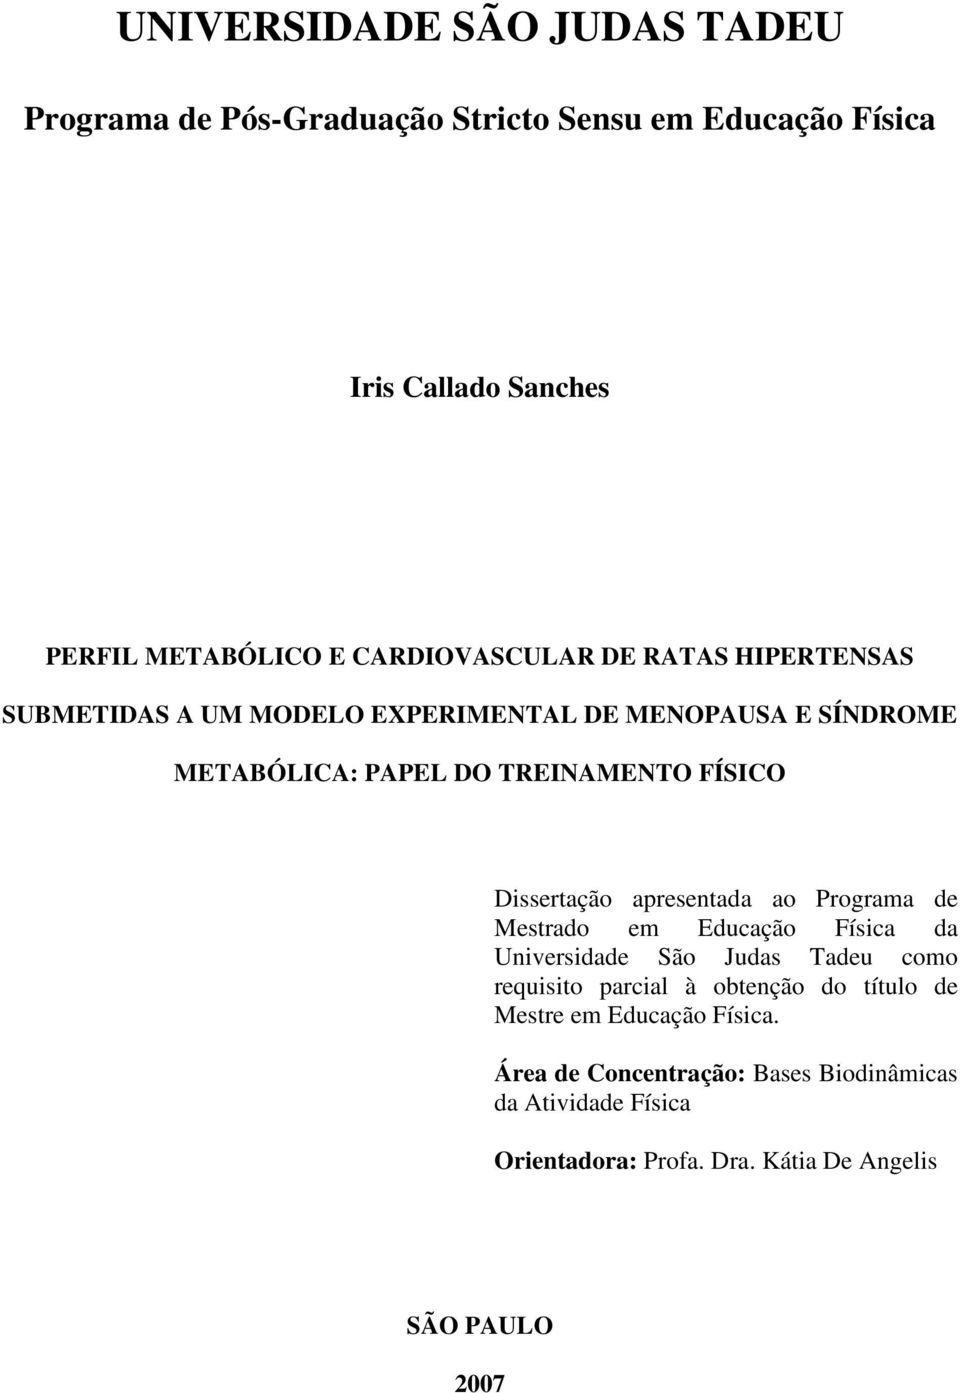 Dissertação apresentada ao Programa de Mestrado em Educação Física da Universidade São Judas Tadeu como requisito parcial à obtenção do